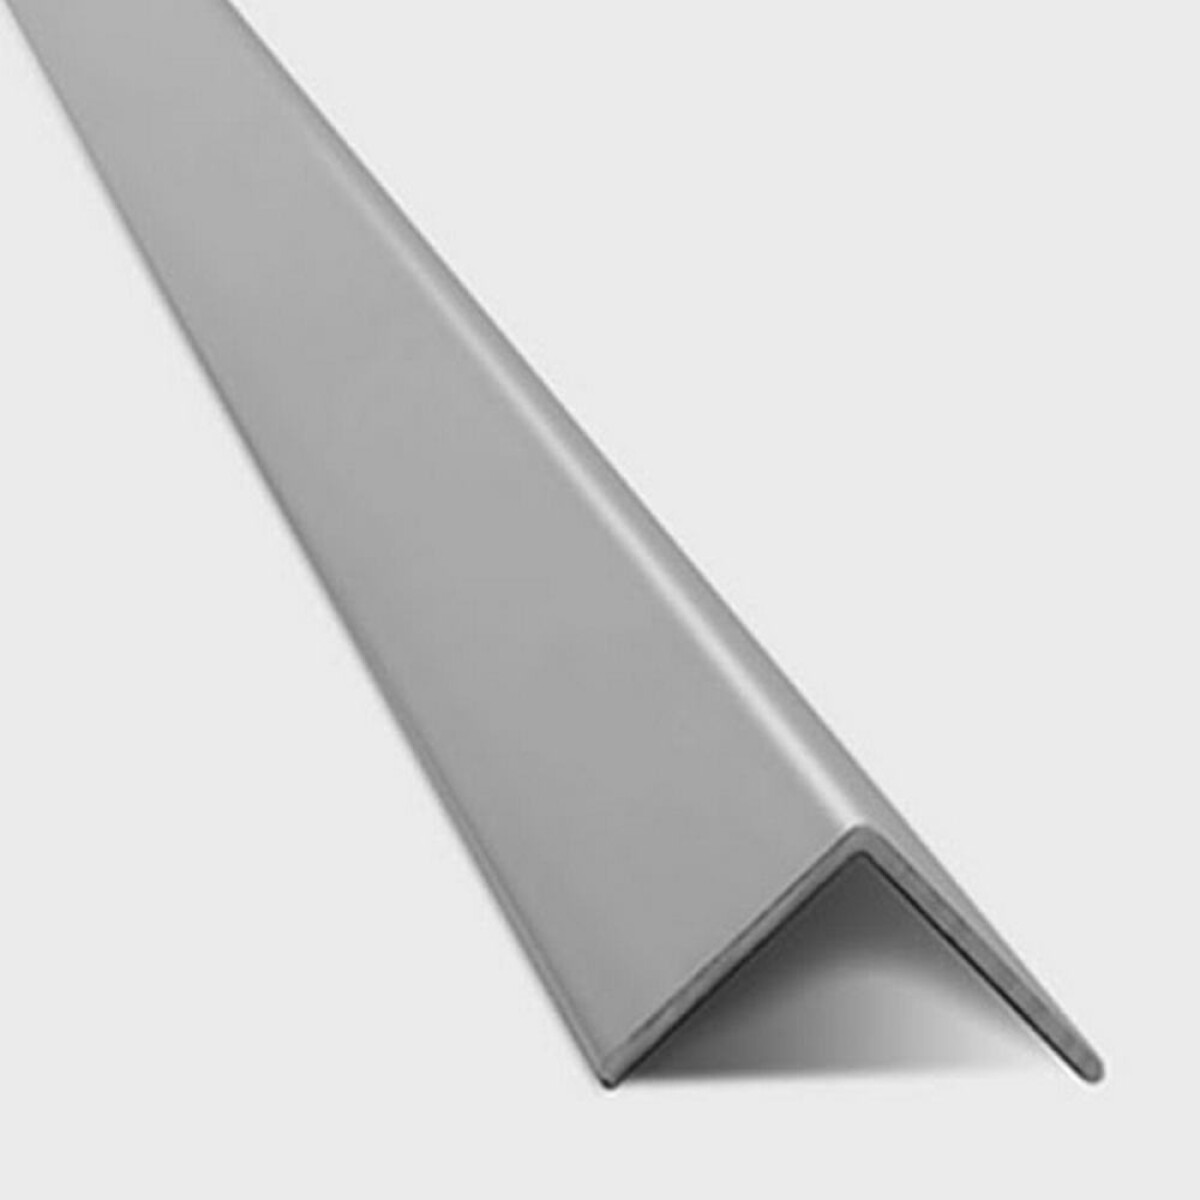 Tapacanto aluminio gris 